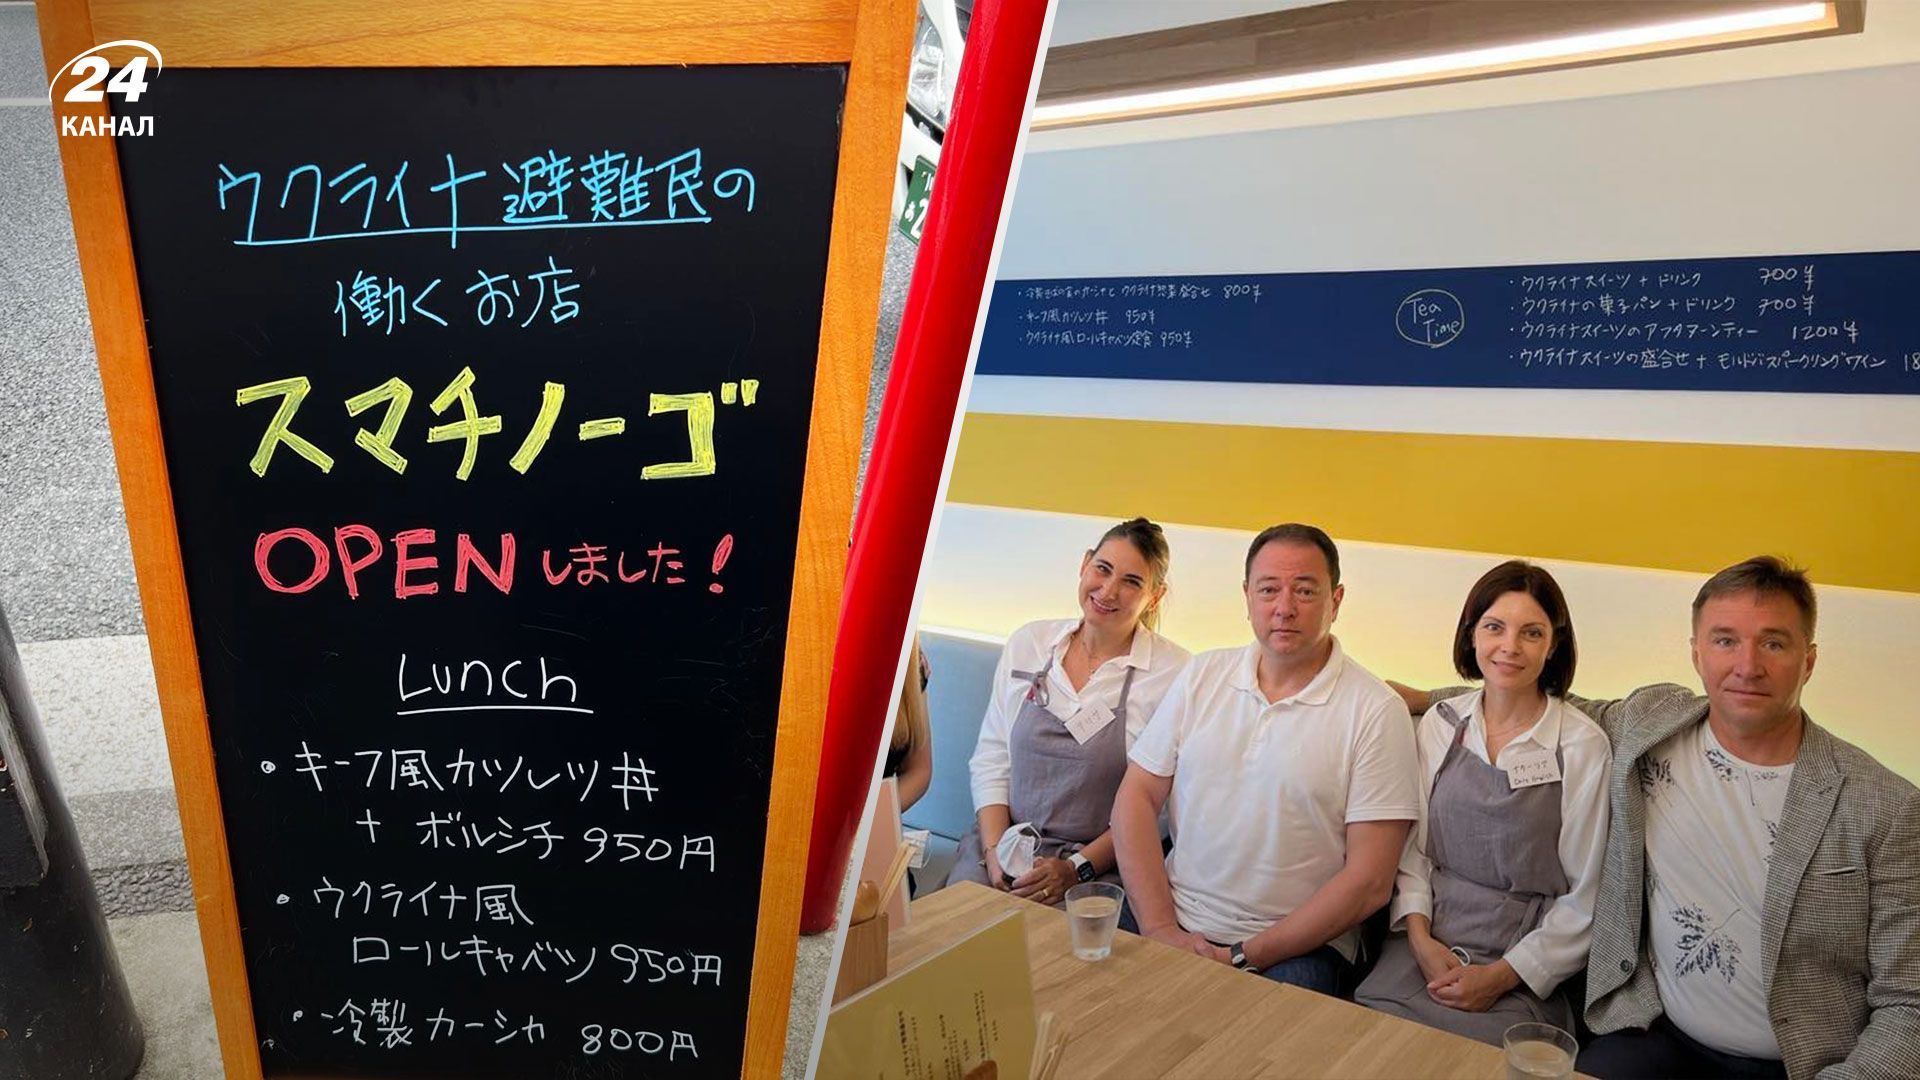 У Токіо відкрився ресторан української кухні "Смачного"